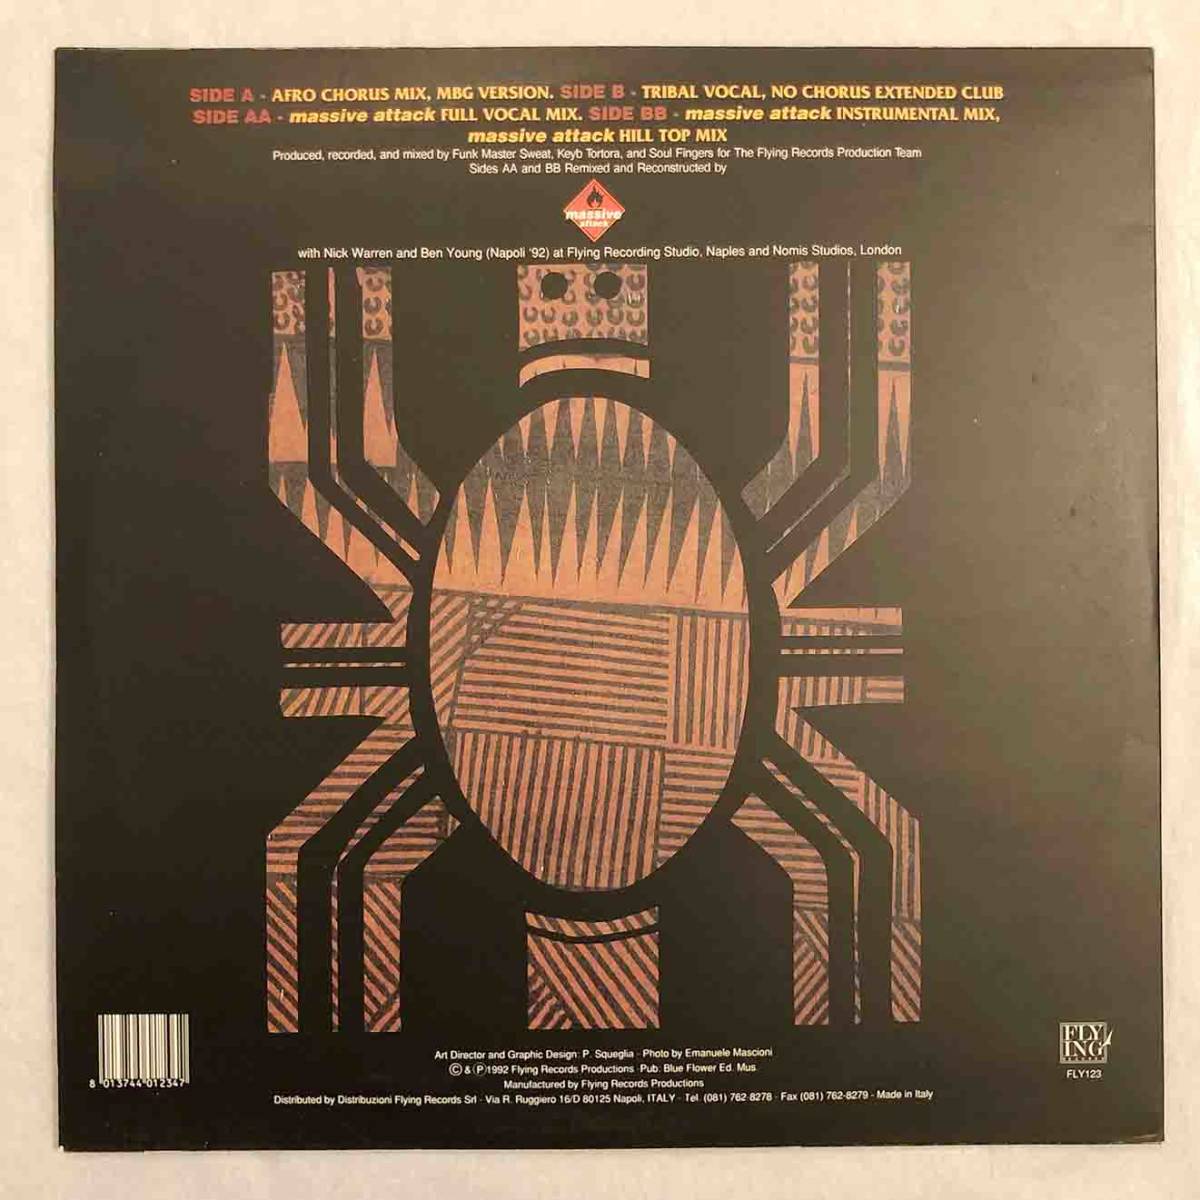 ■1992年 Italy盤 オリジナル KWANZAA POSSE - African Vibration 2枚組 12”EP FLY123 Flying Records Massive Attack Remixes_画像2